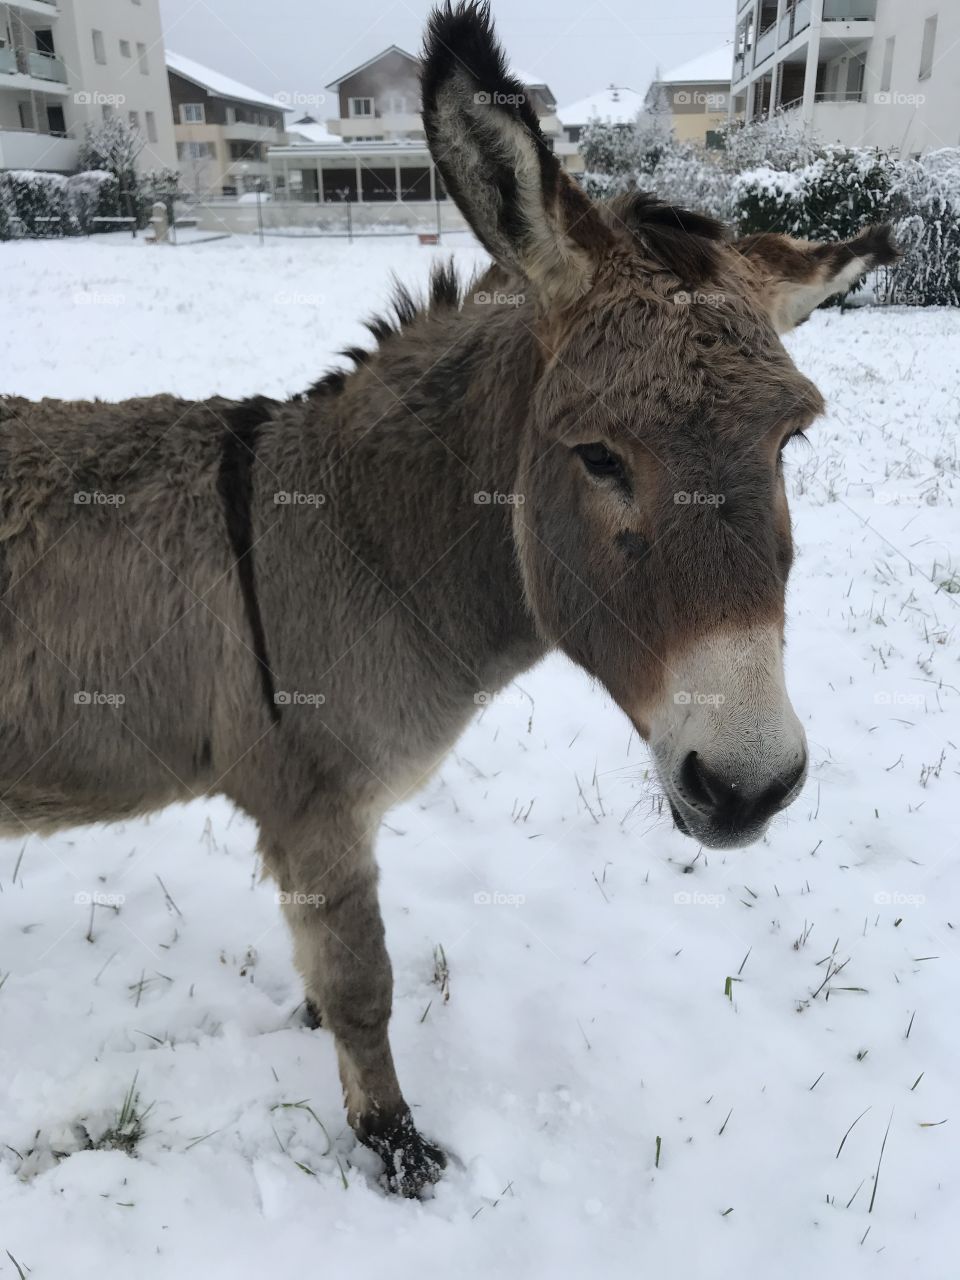 Âne donkey snow winter